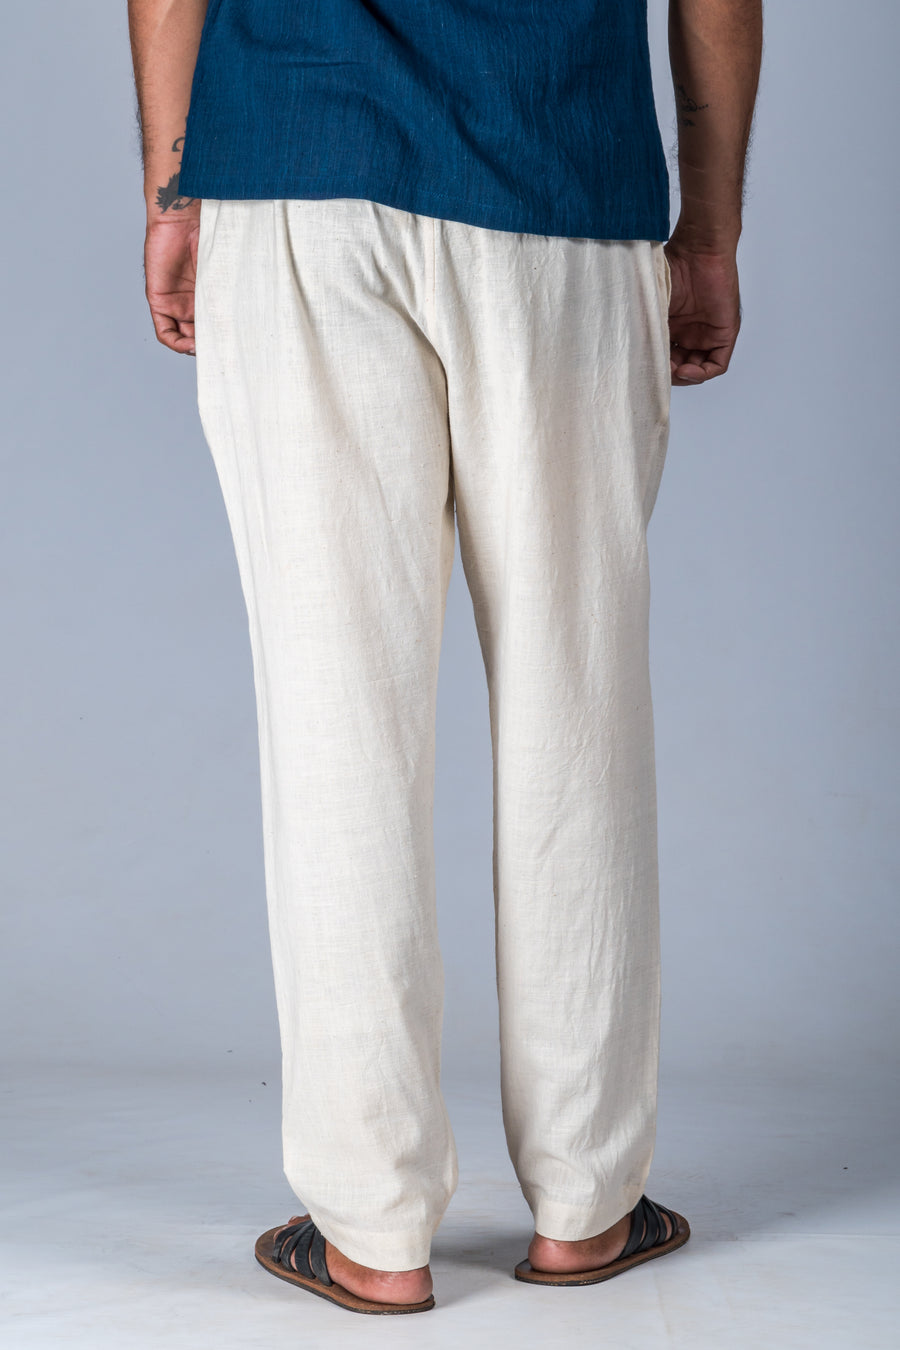 Off-White Desi Cotton Pant - JIVA – Upasana Auroville